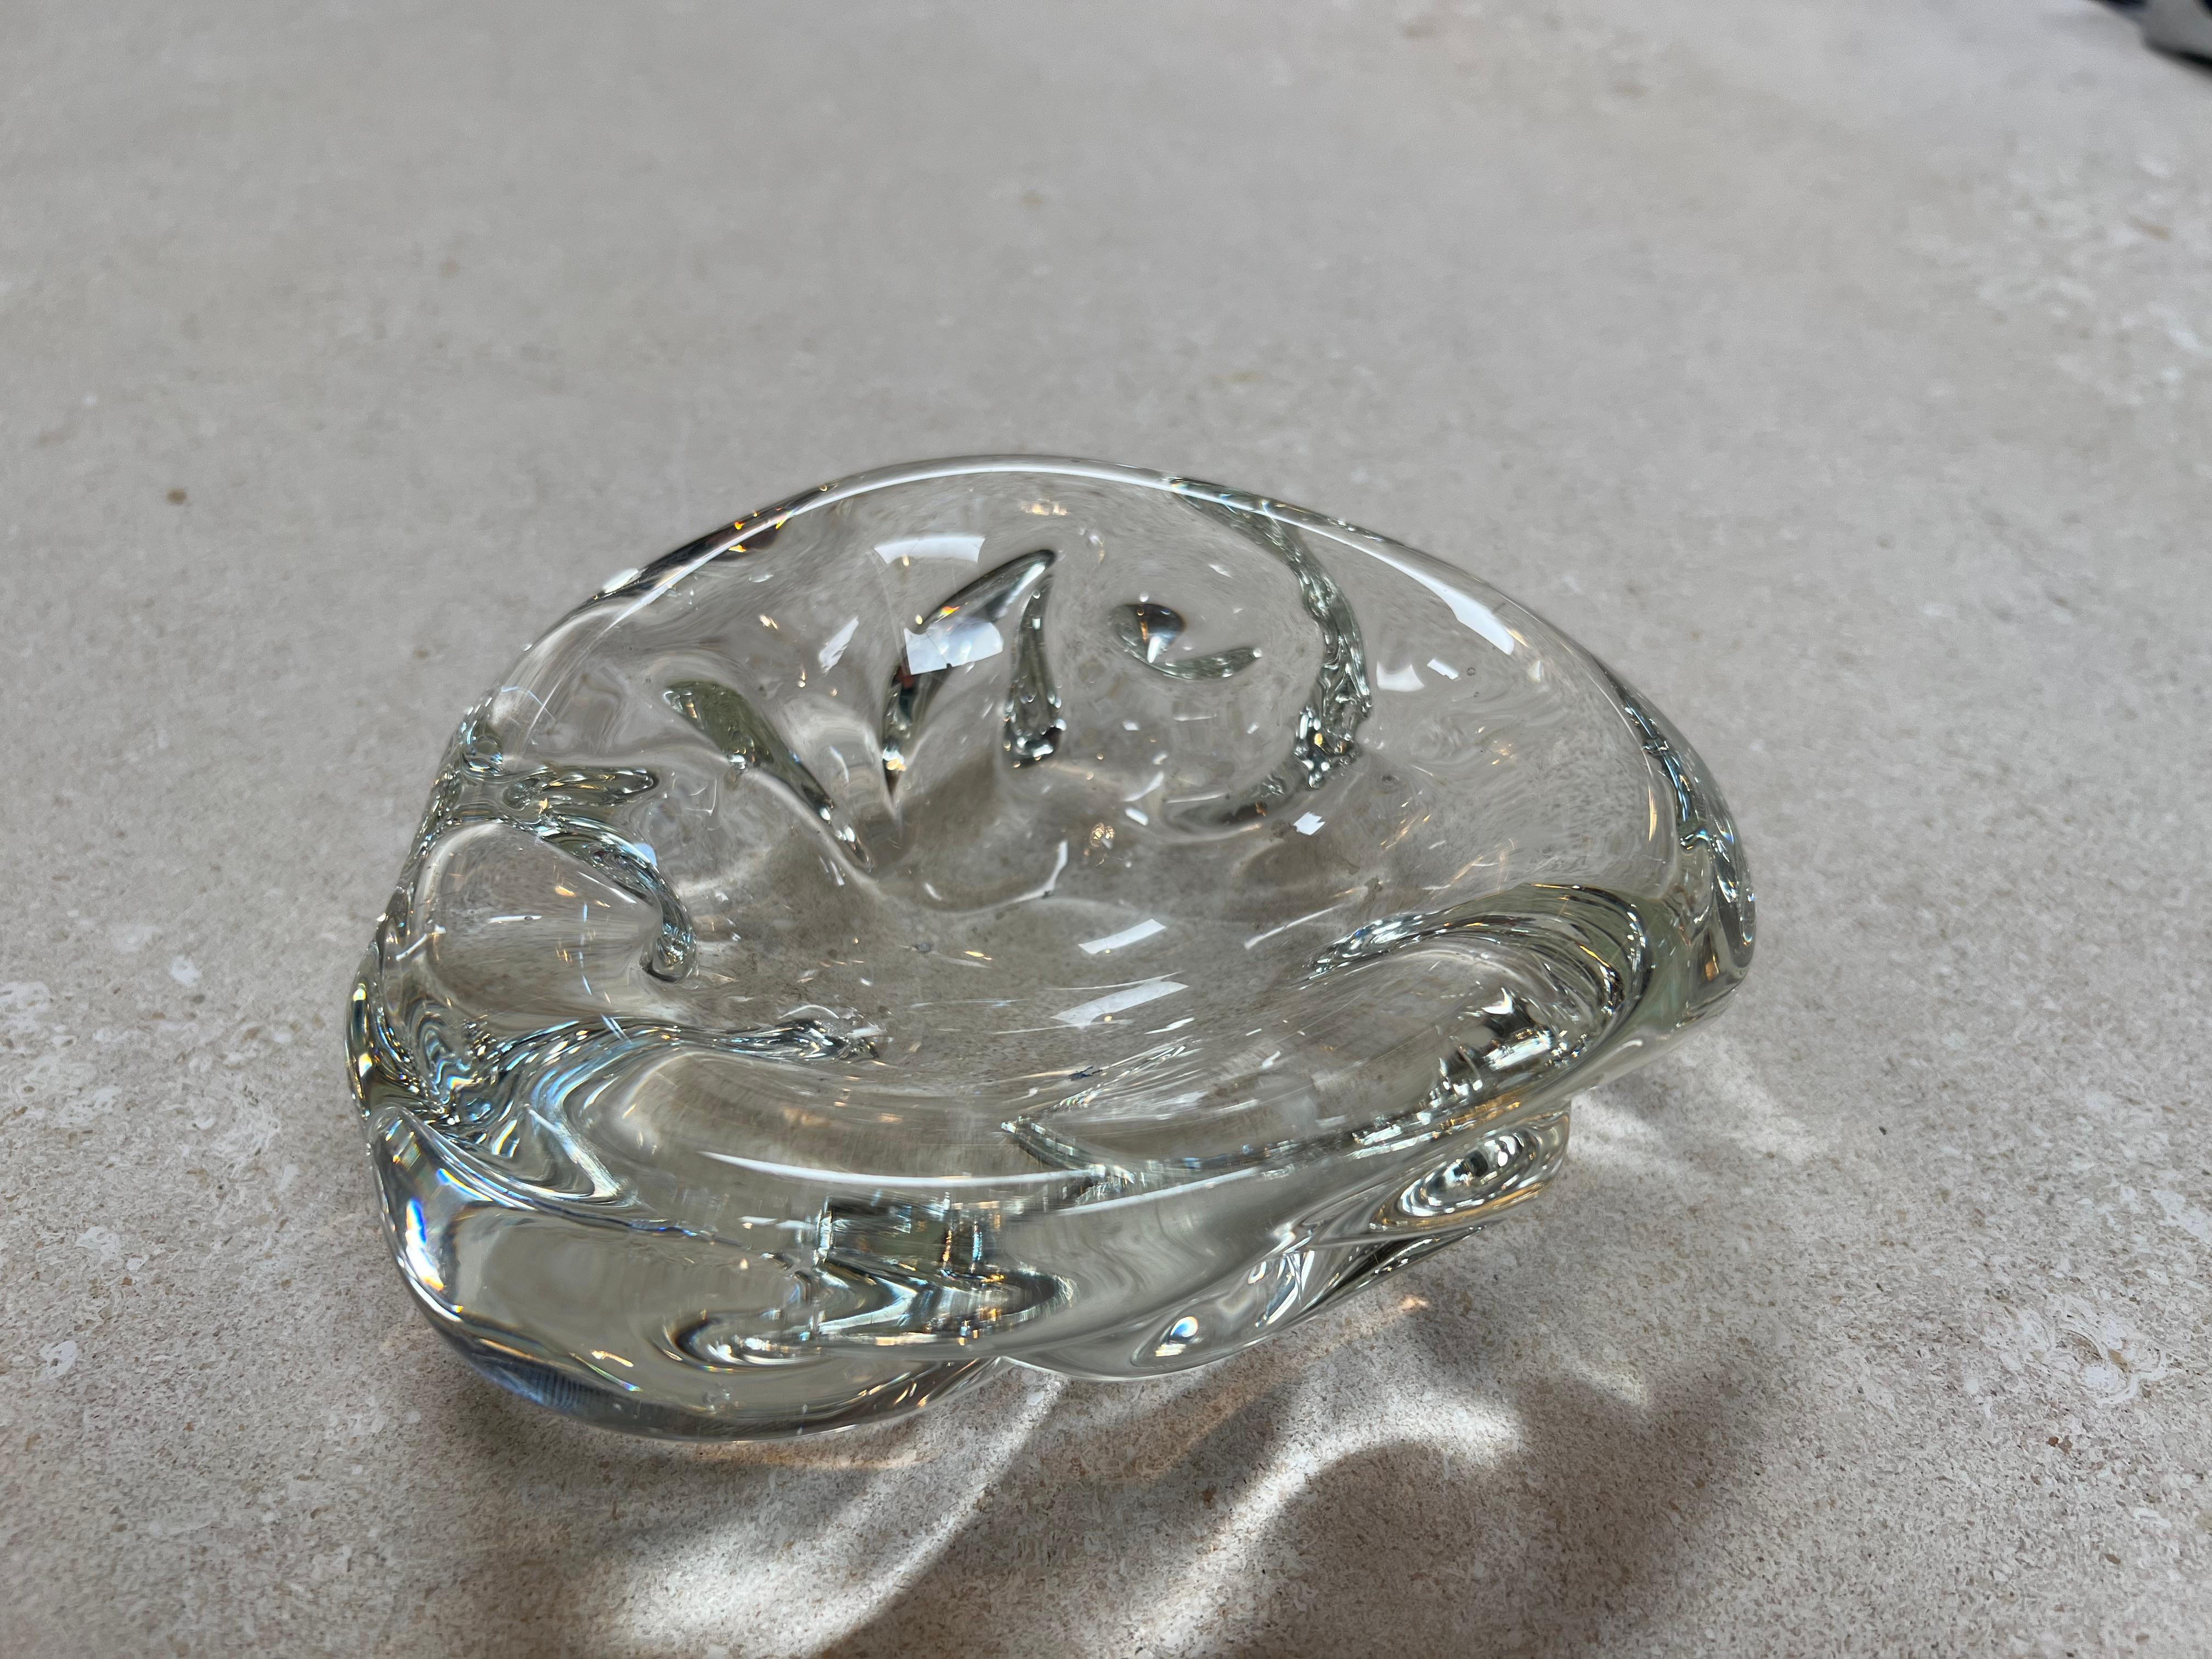 Die kleine Muschelschale aus dekorativem Vintage-Glas aus den 1960er Jahren strahlt eine zarte und charmante Ästhetik aus. Diese Schale in Form einer Muschel fängt die Essenz der vom Meer inspirierten Schönheit ein. Das MATERIAL Glas verleiht ihm